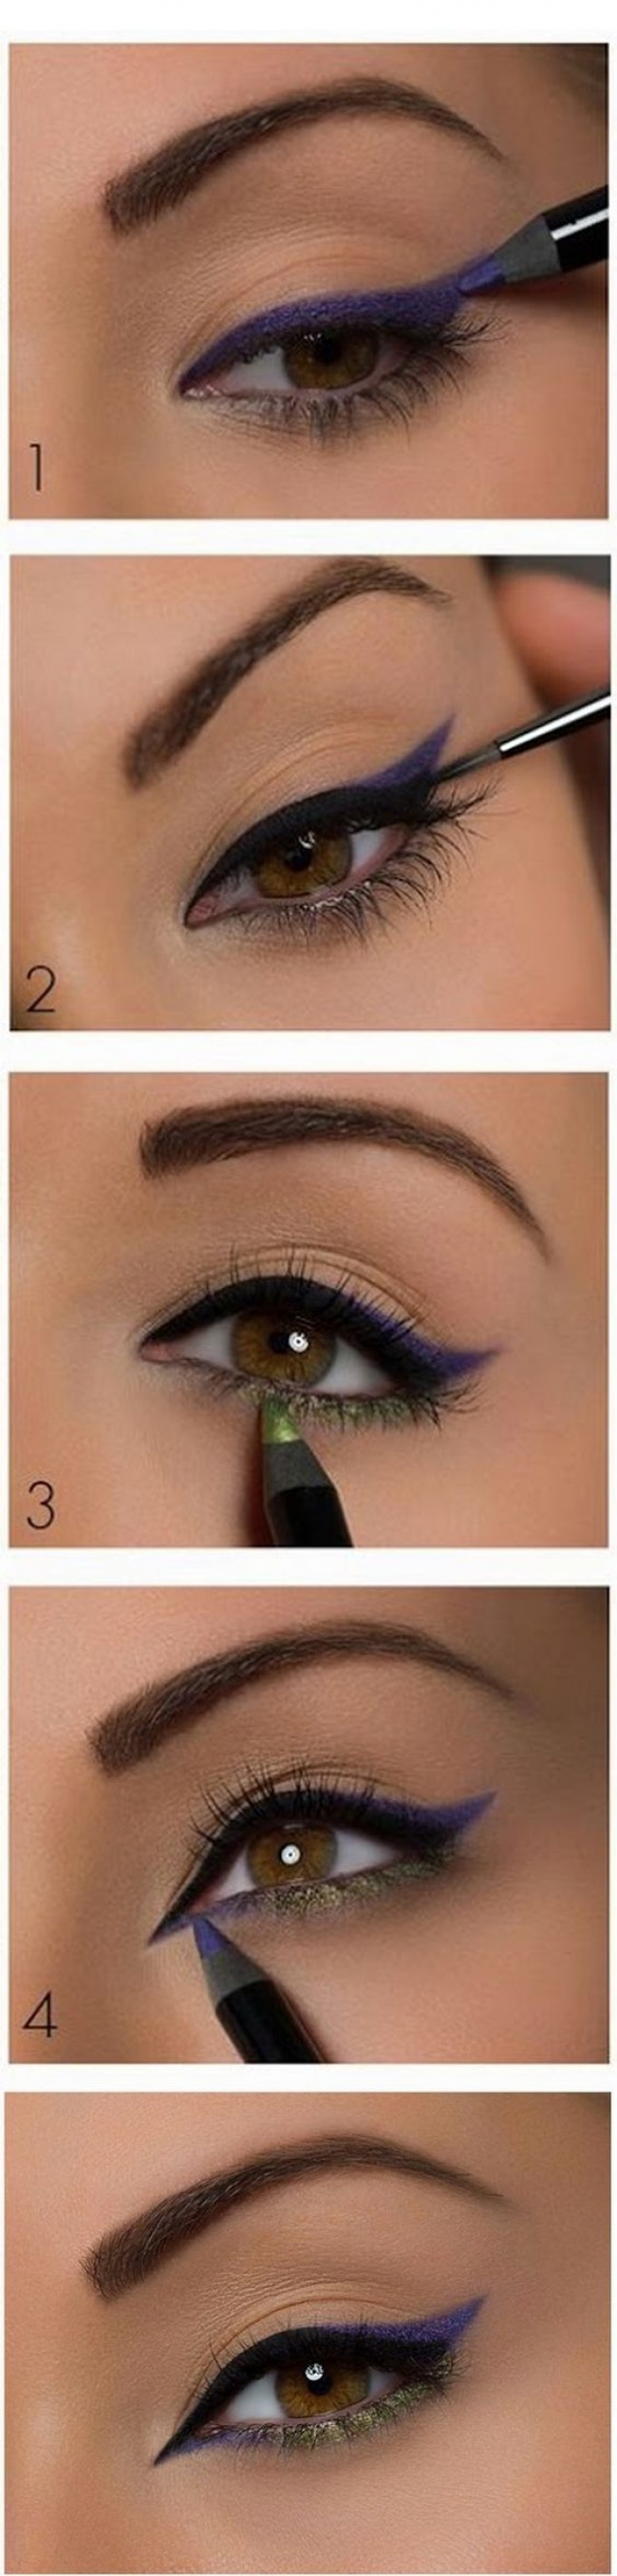 11 μυστικά για να πετύχετε το τέλειο eye liner - Εικόνα 11